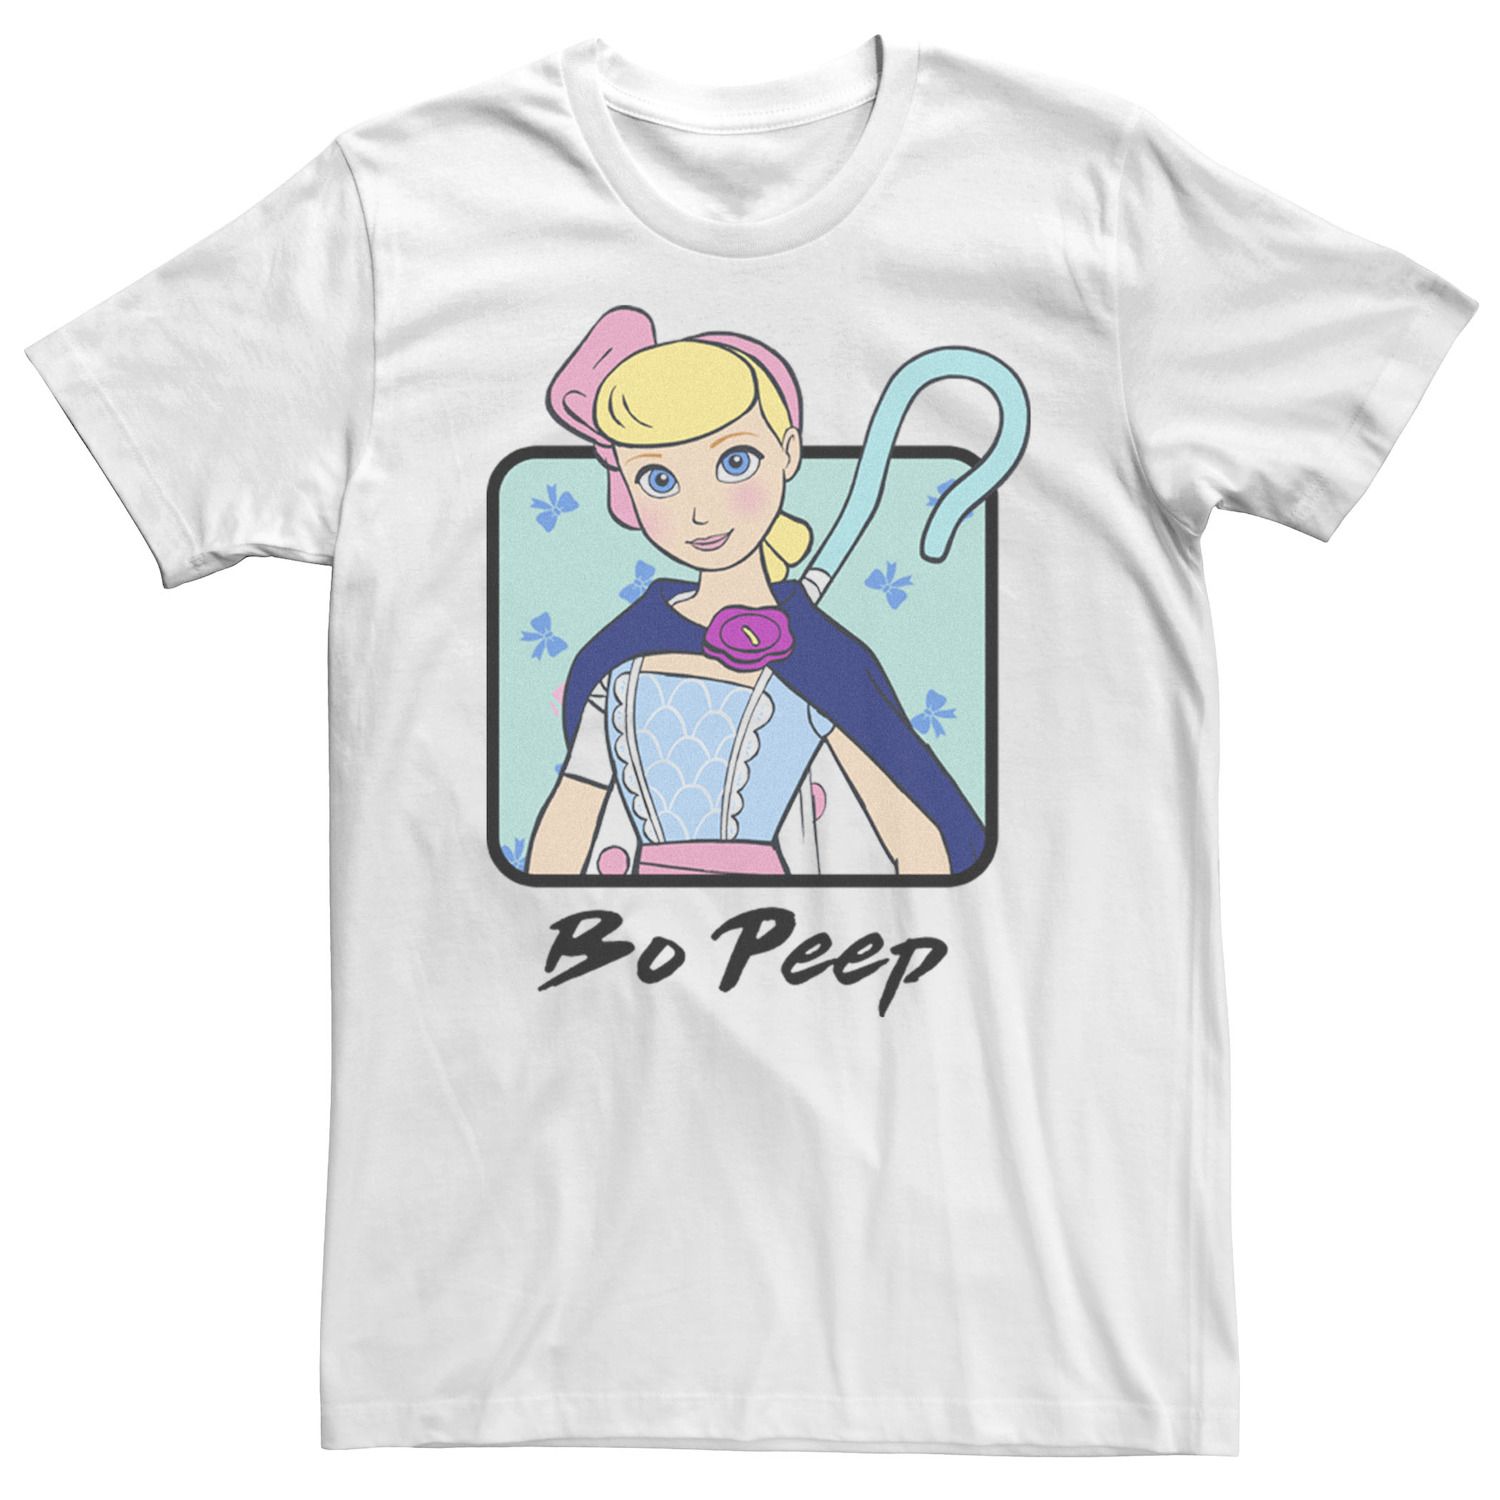 Мужская футболка Toy Story 4 Bo Peep с цветным бюстом и портретом Disney / Pixar фигурка q posket pixar characters – toy story 4 – bo peep